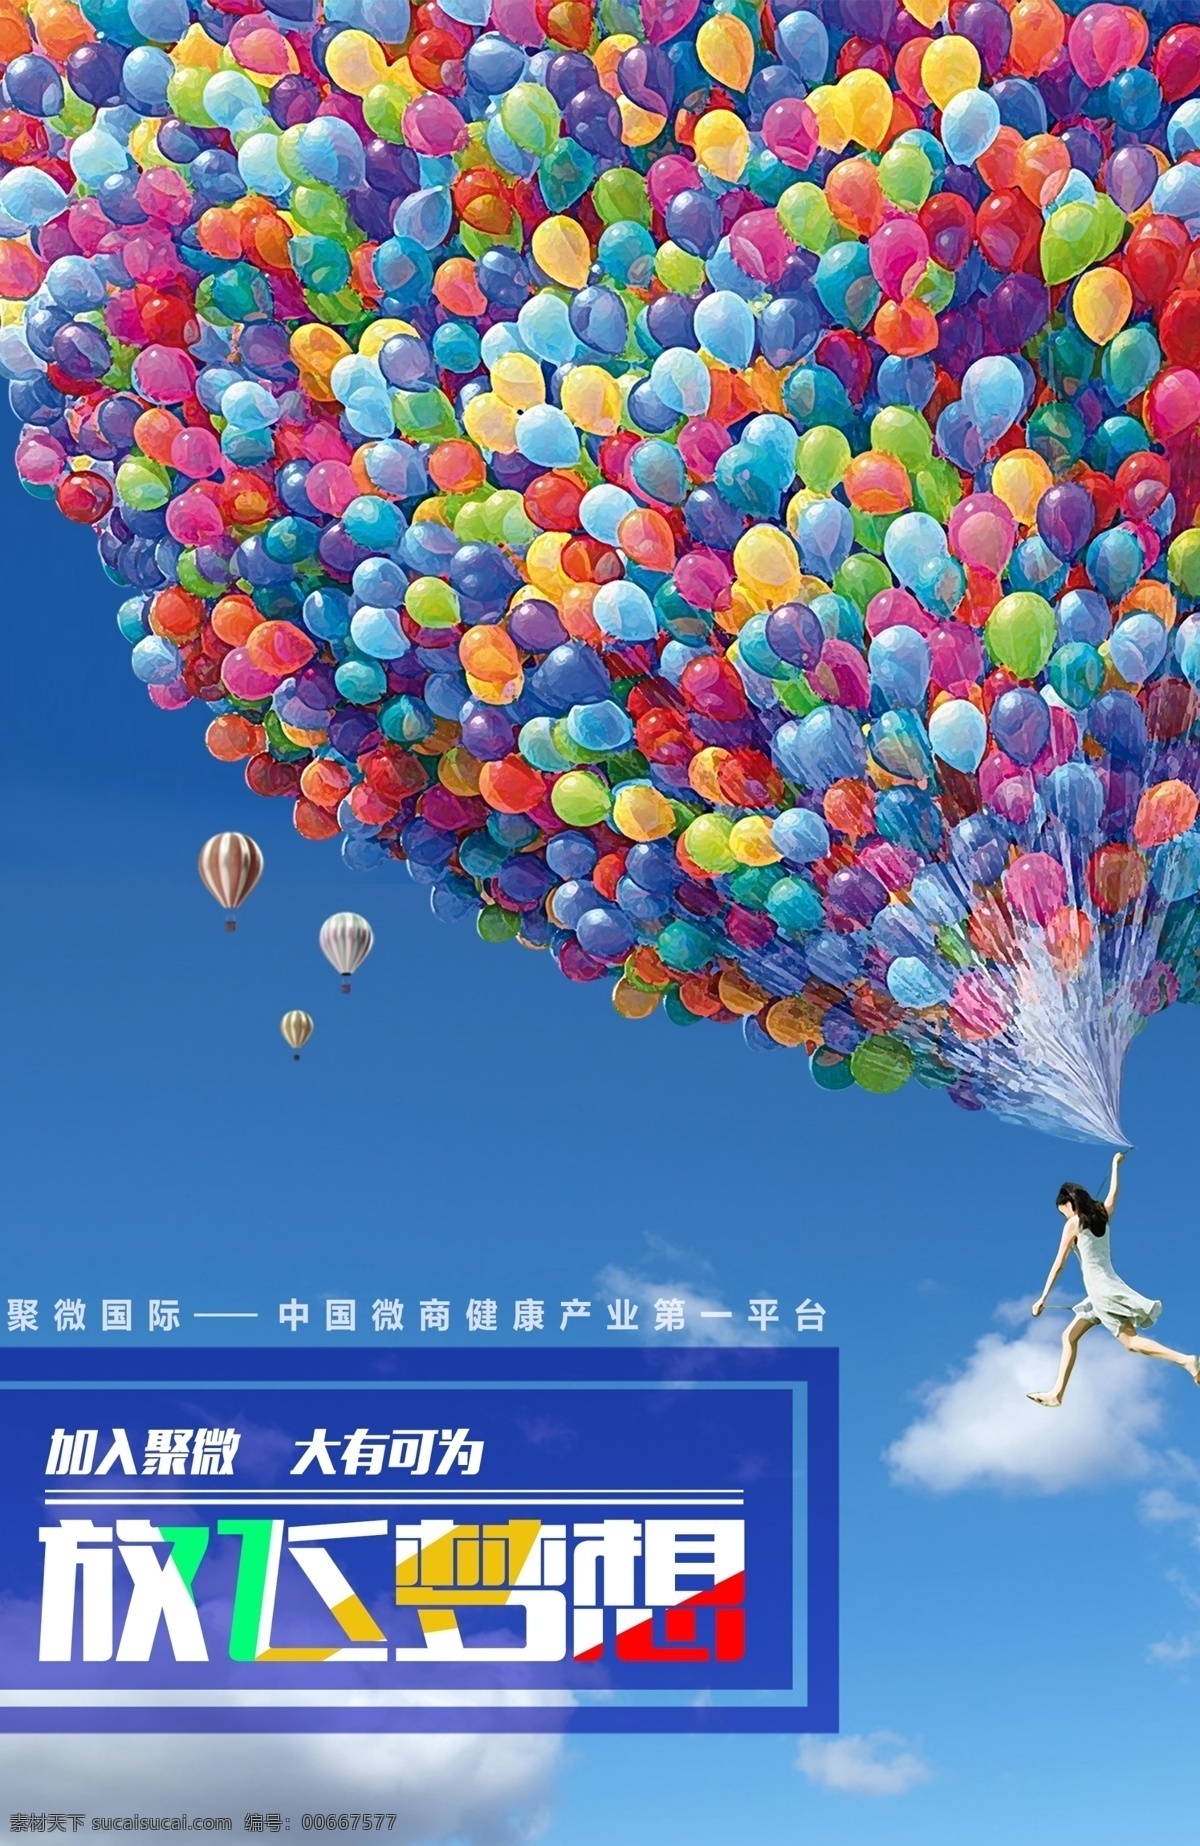 企业文化 放飞梦想 蓝天白云 公司文化 热气球 气球 企业文化展板 企业形象展板 企业文化海报 分层